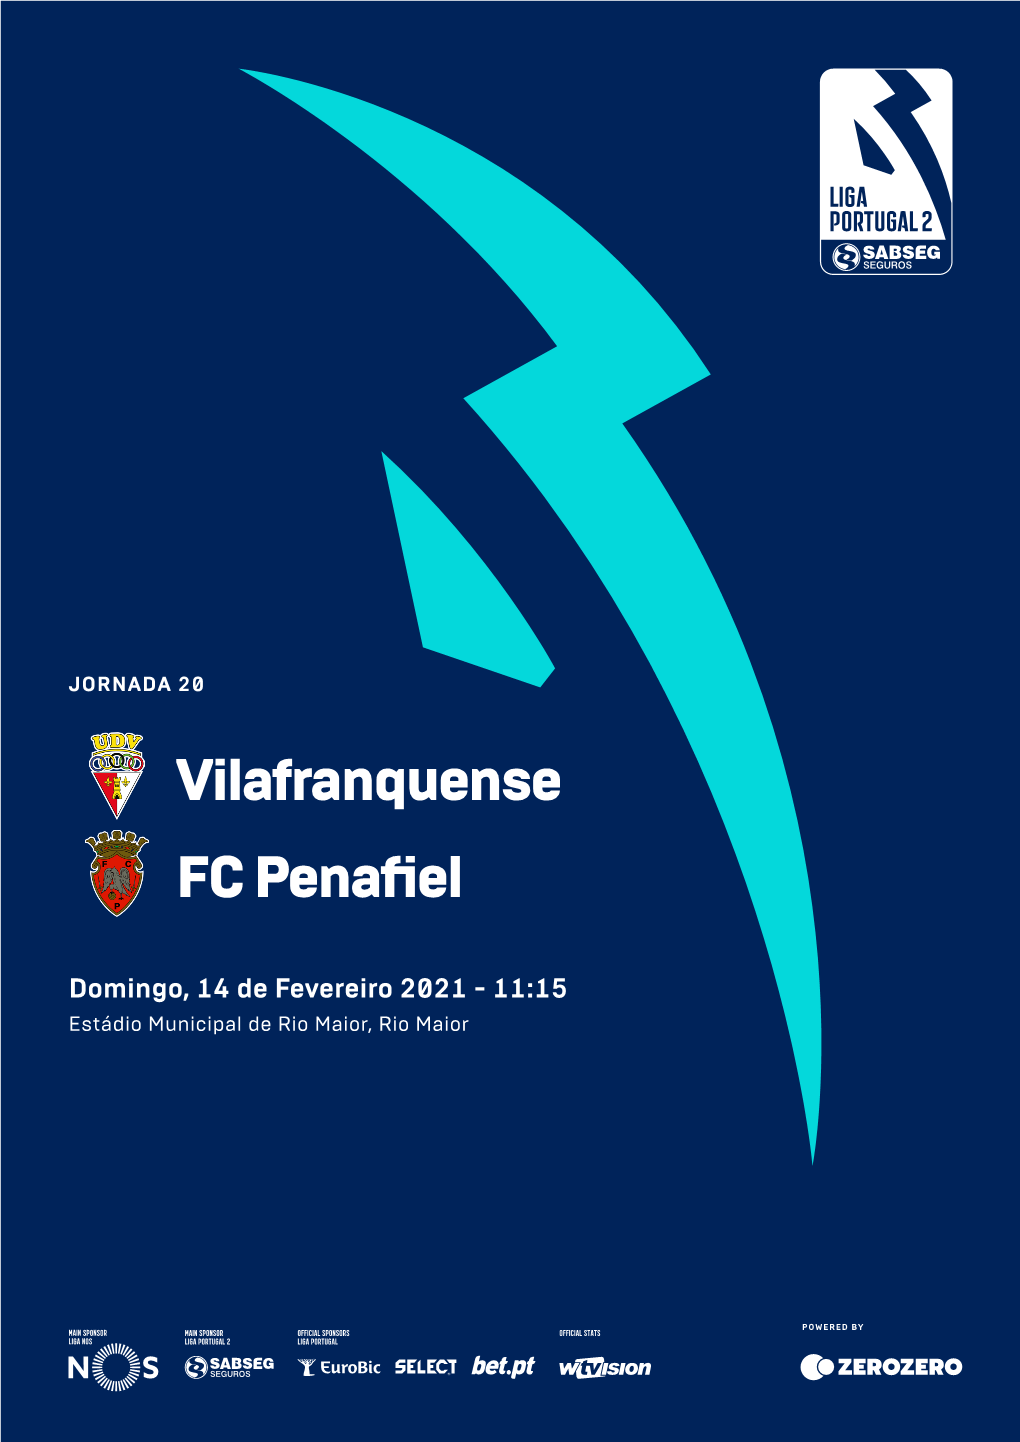 Vilafranquense FC Penafiel